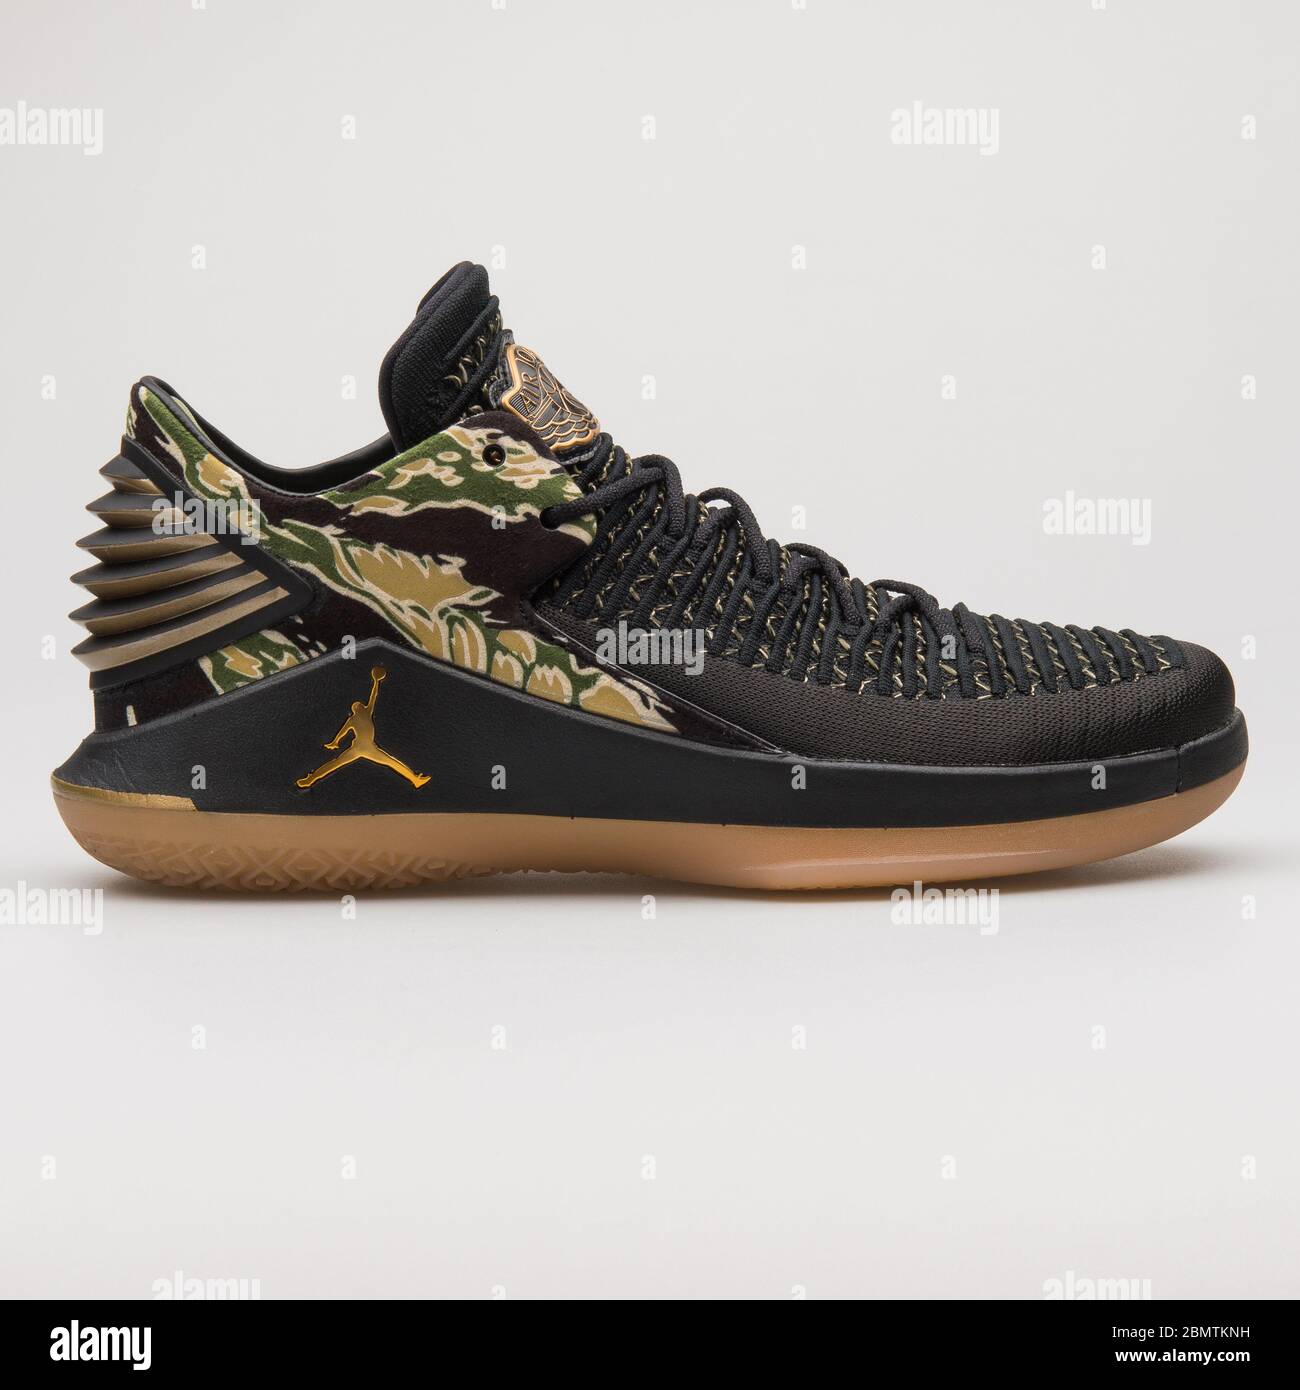 VIENA, AUSTRIA - 19 DE FEBRERO de 2018: Nike Air Jordan 32 Zapatillas bajas en negro, oro, verde y amarillo sobre fondo blanco de stock - Alamy